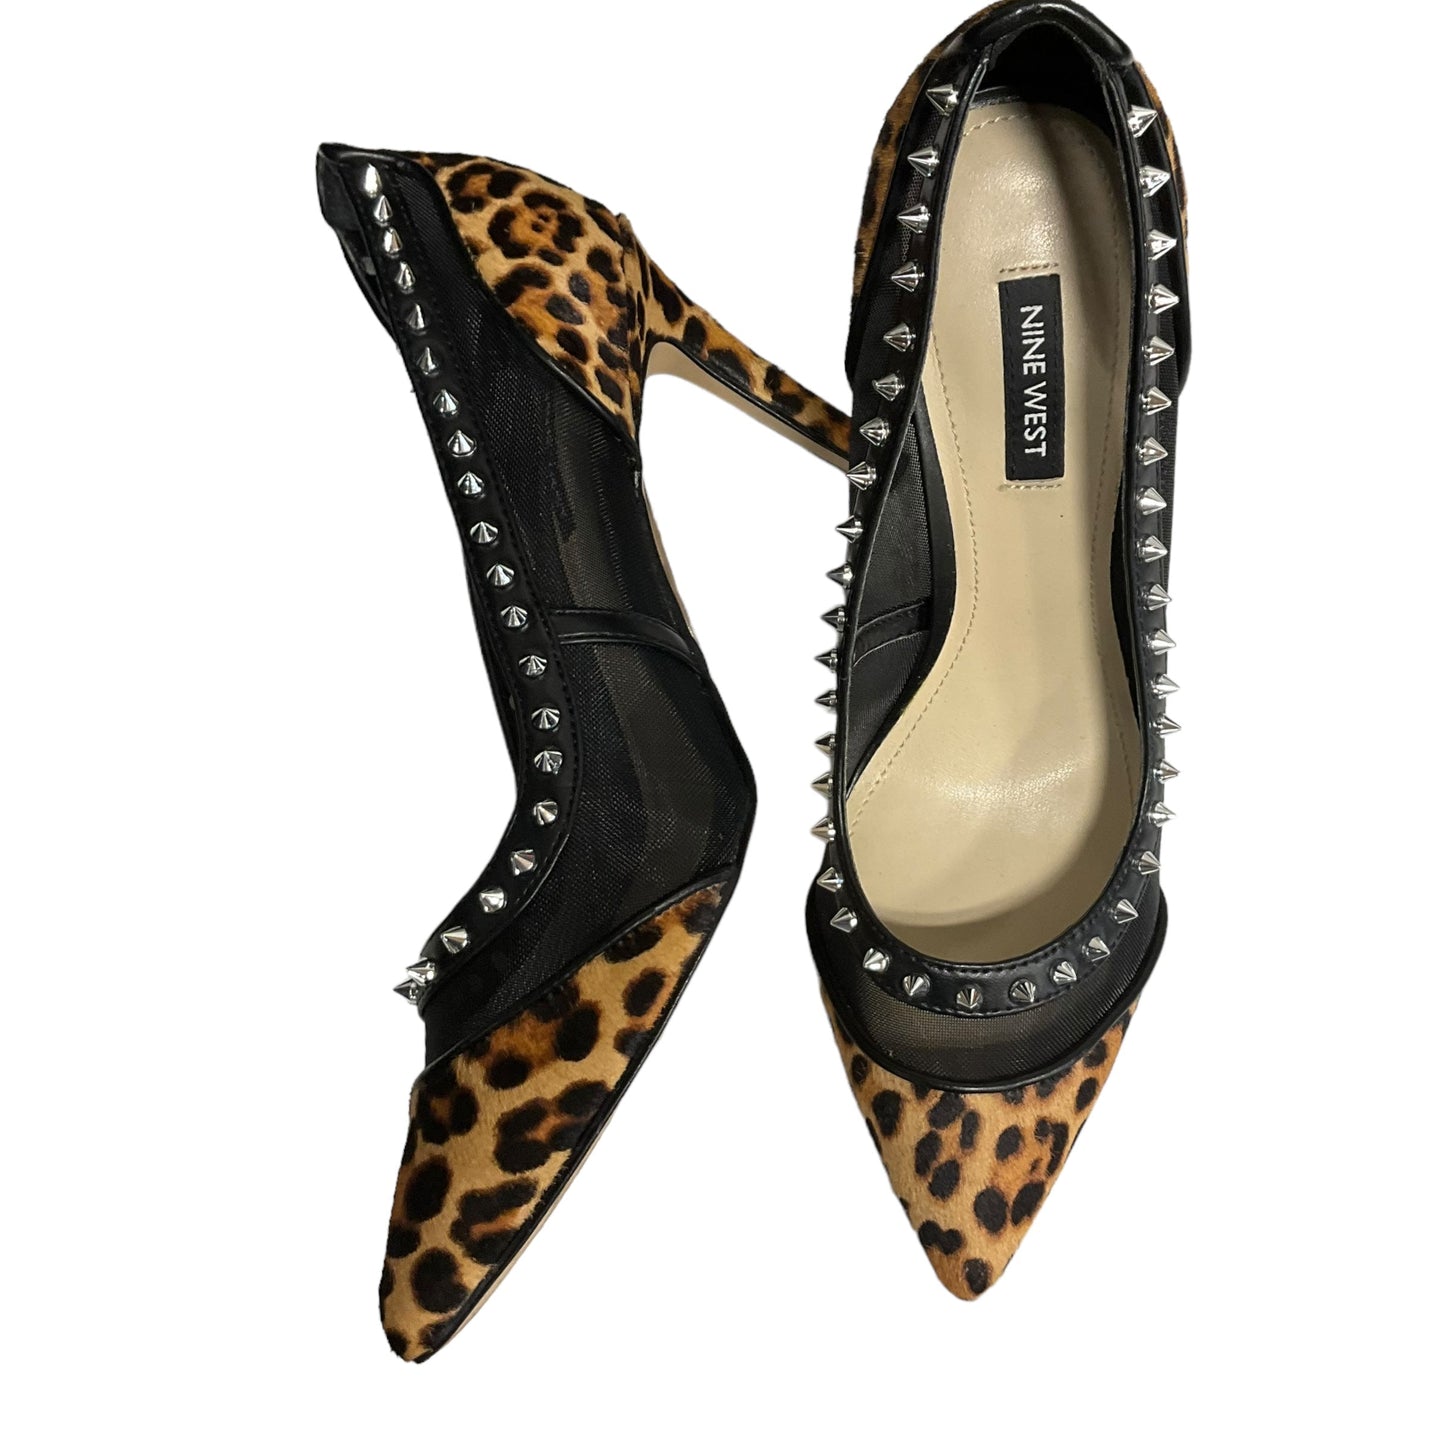 Leopard Print Shoes Heels Stiletto Nine West Apparel, Size 8